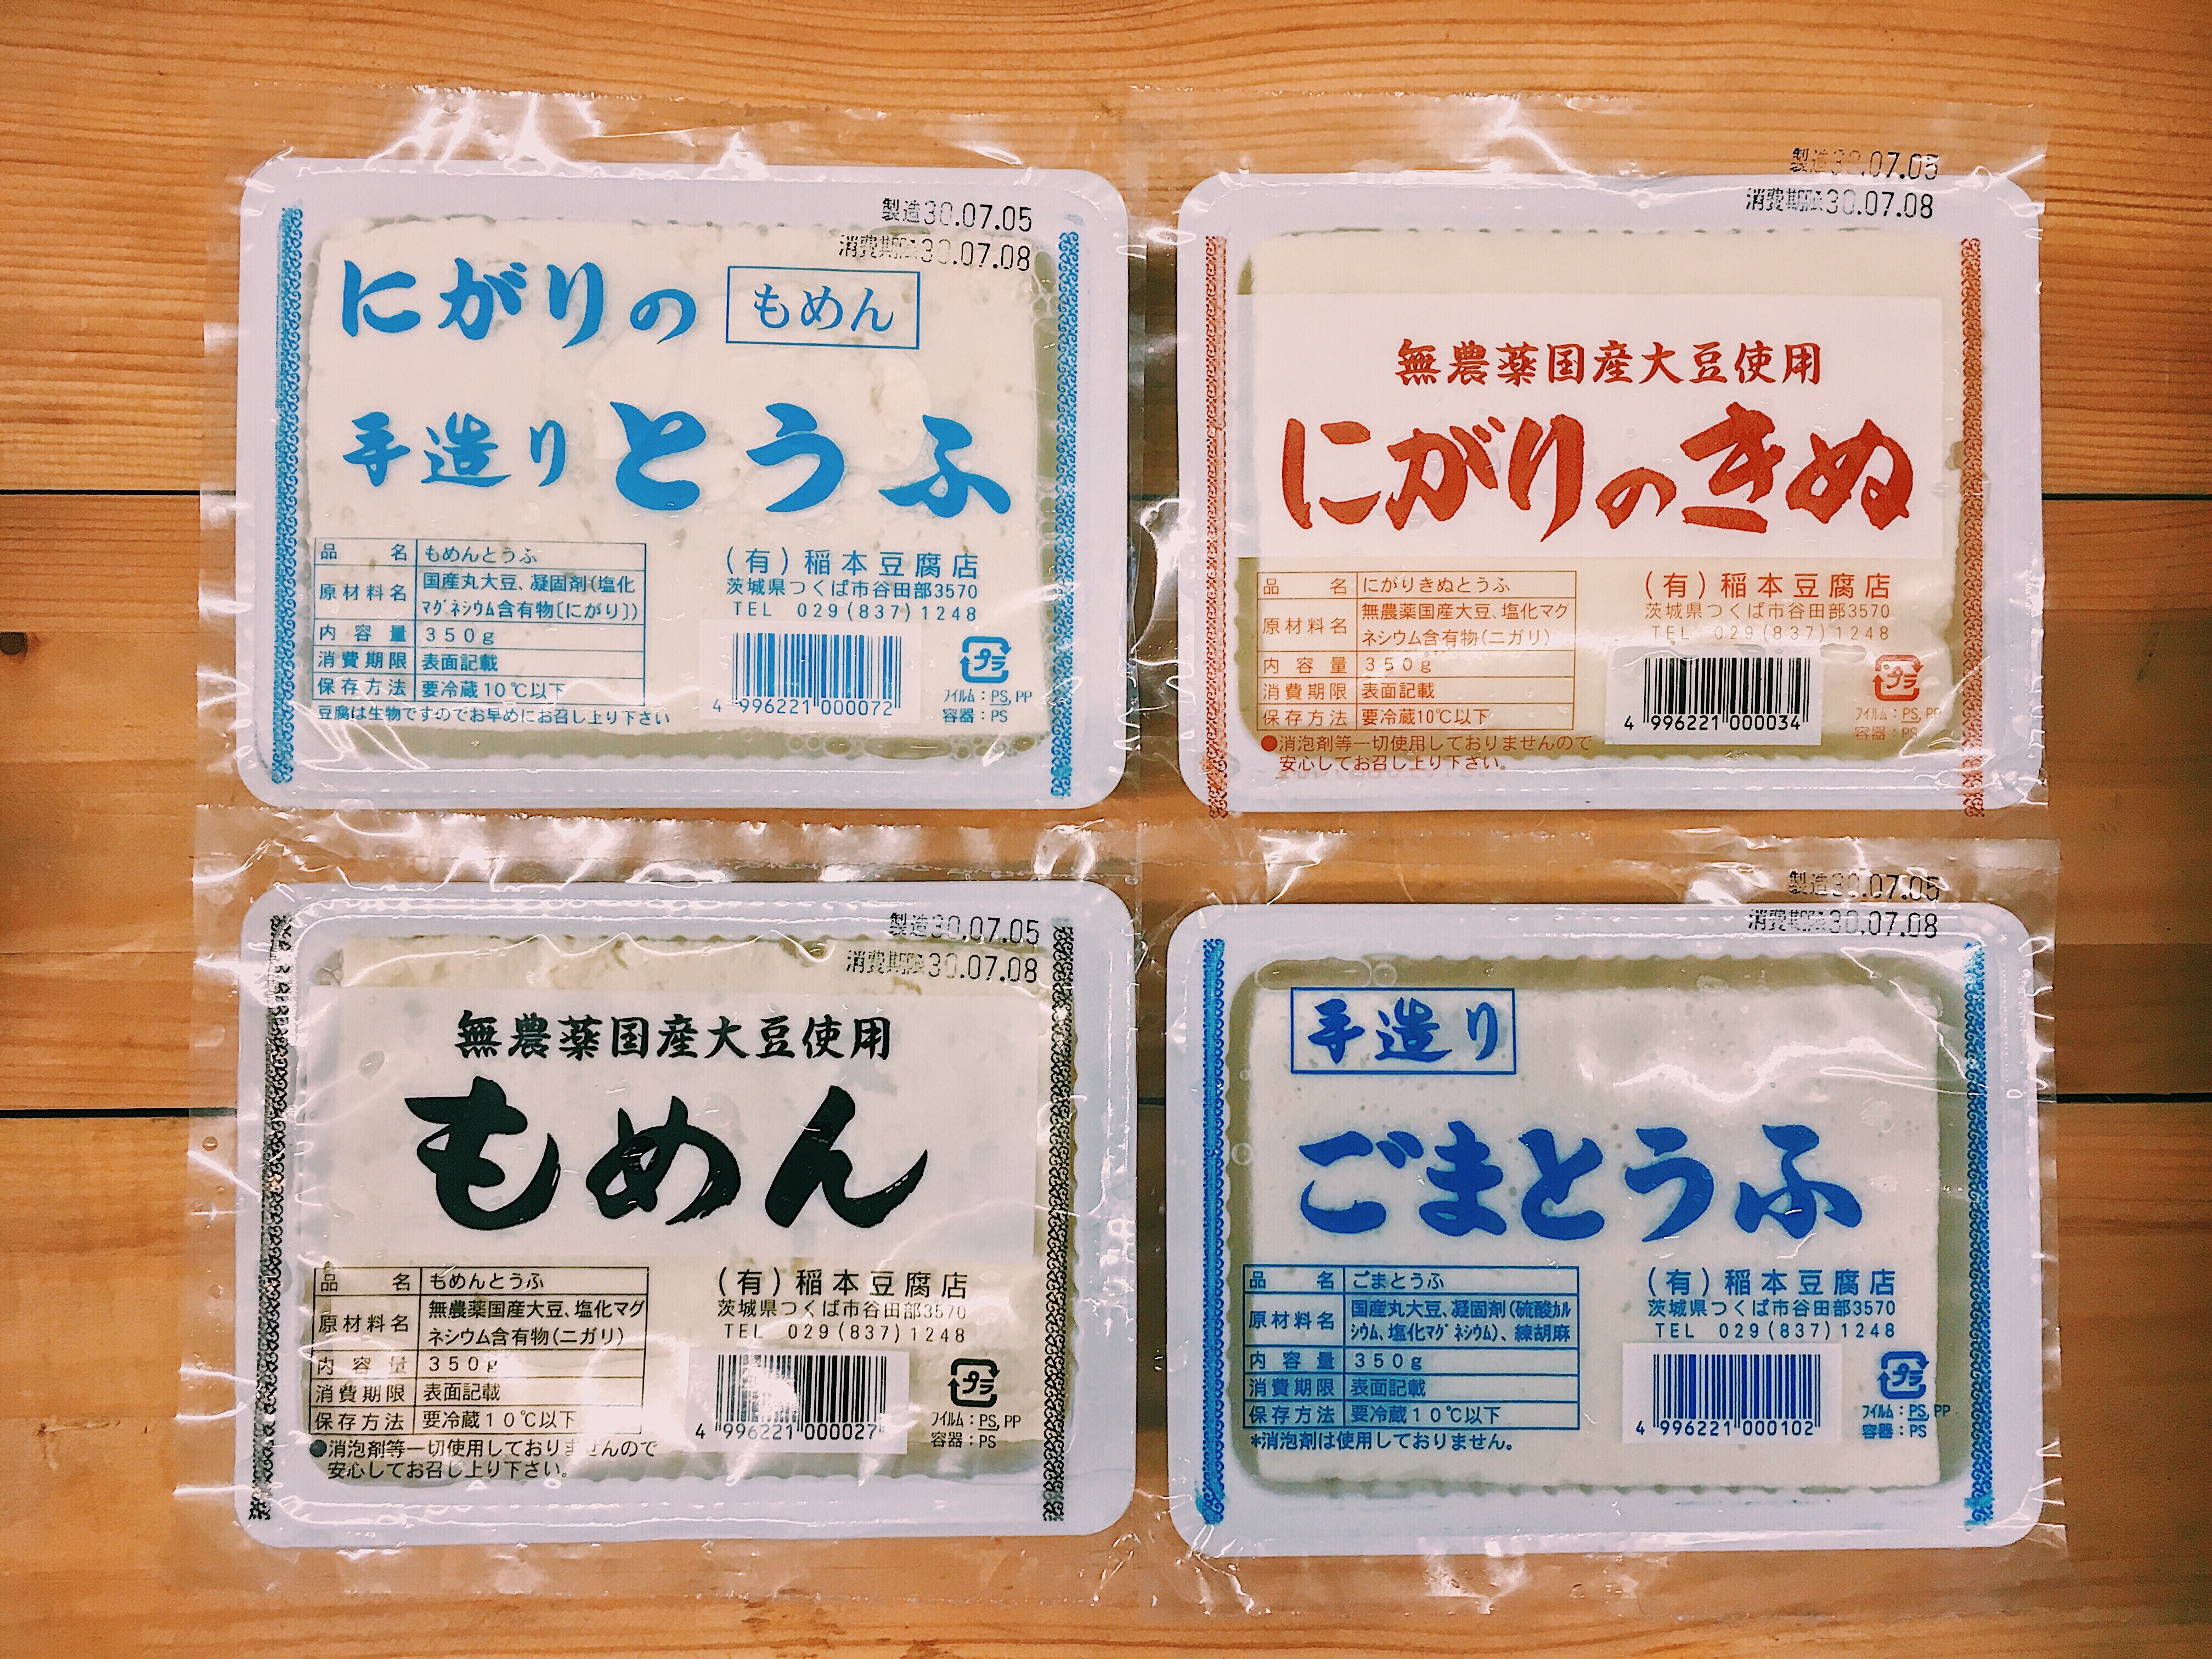 木曜日は稲本さんのお豆腐です。